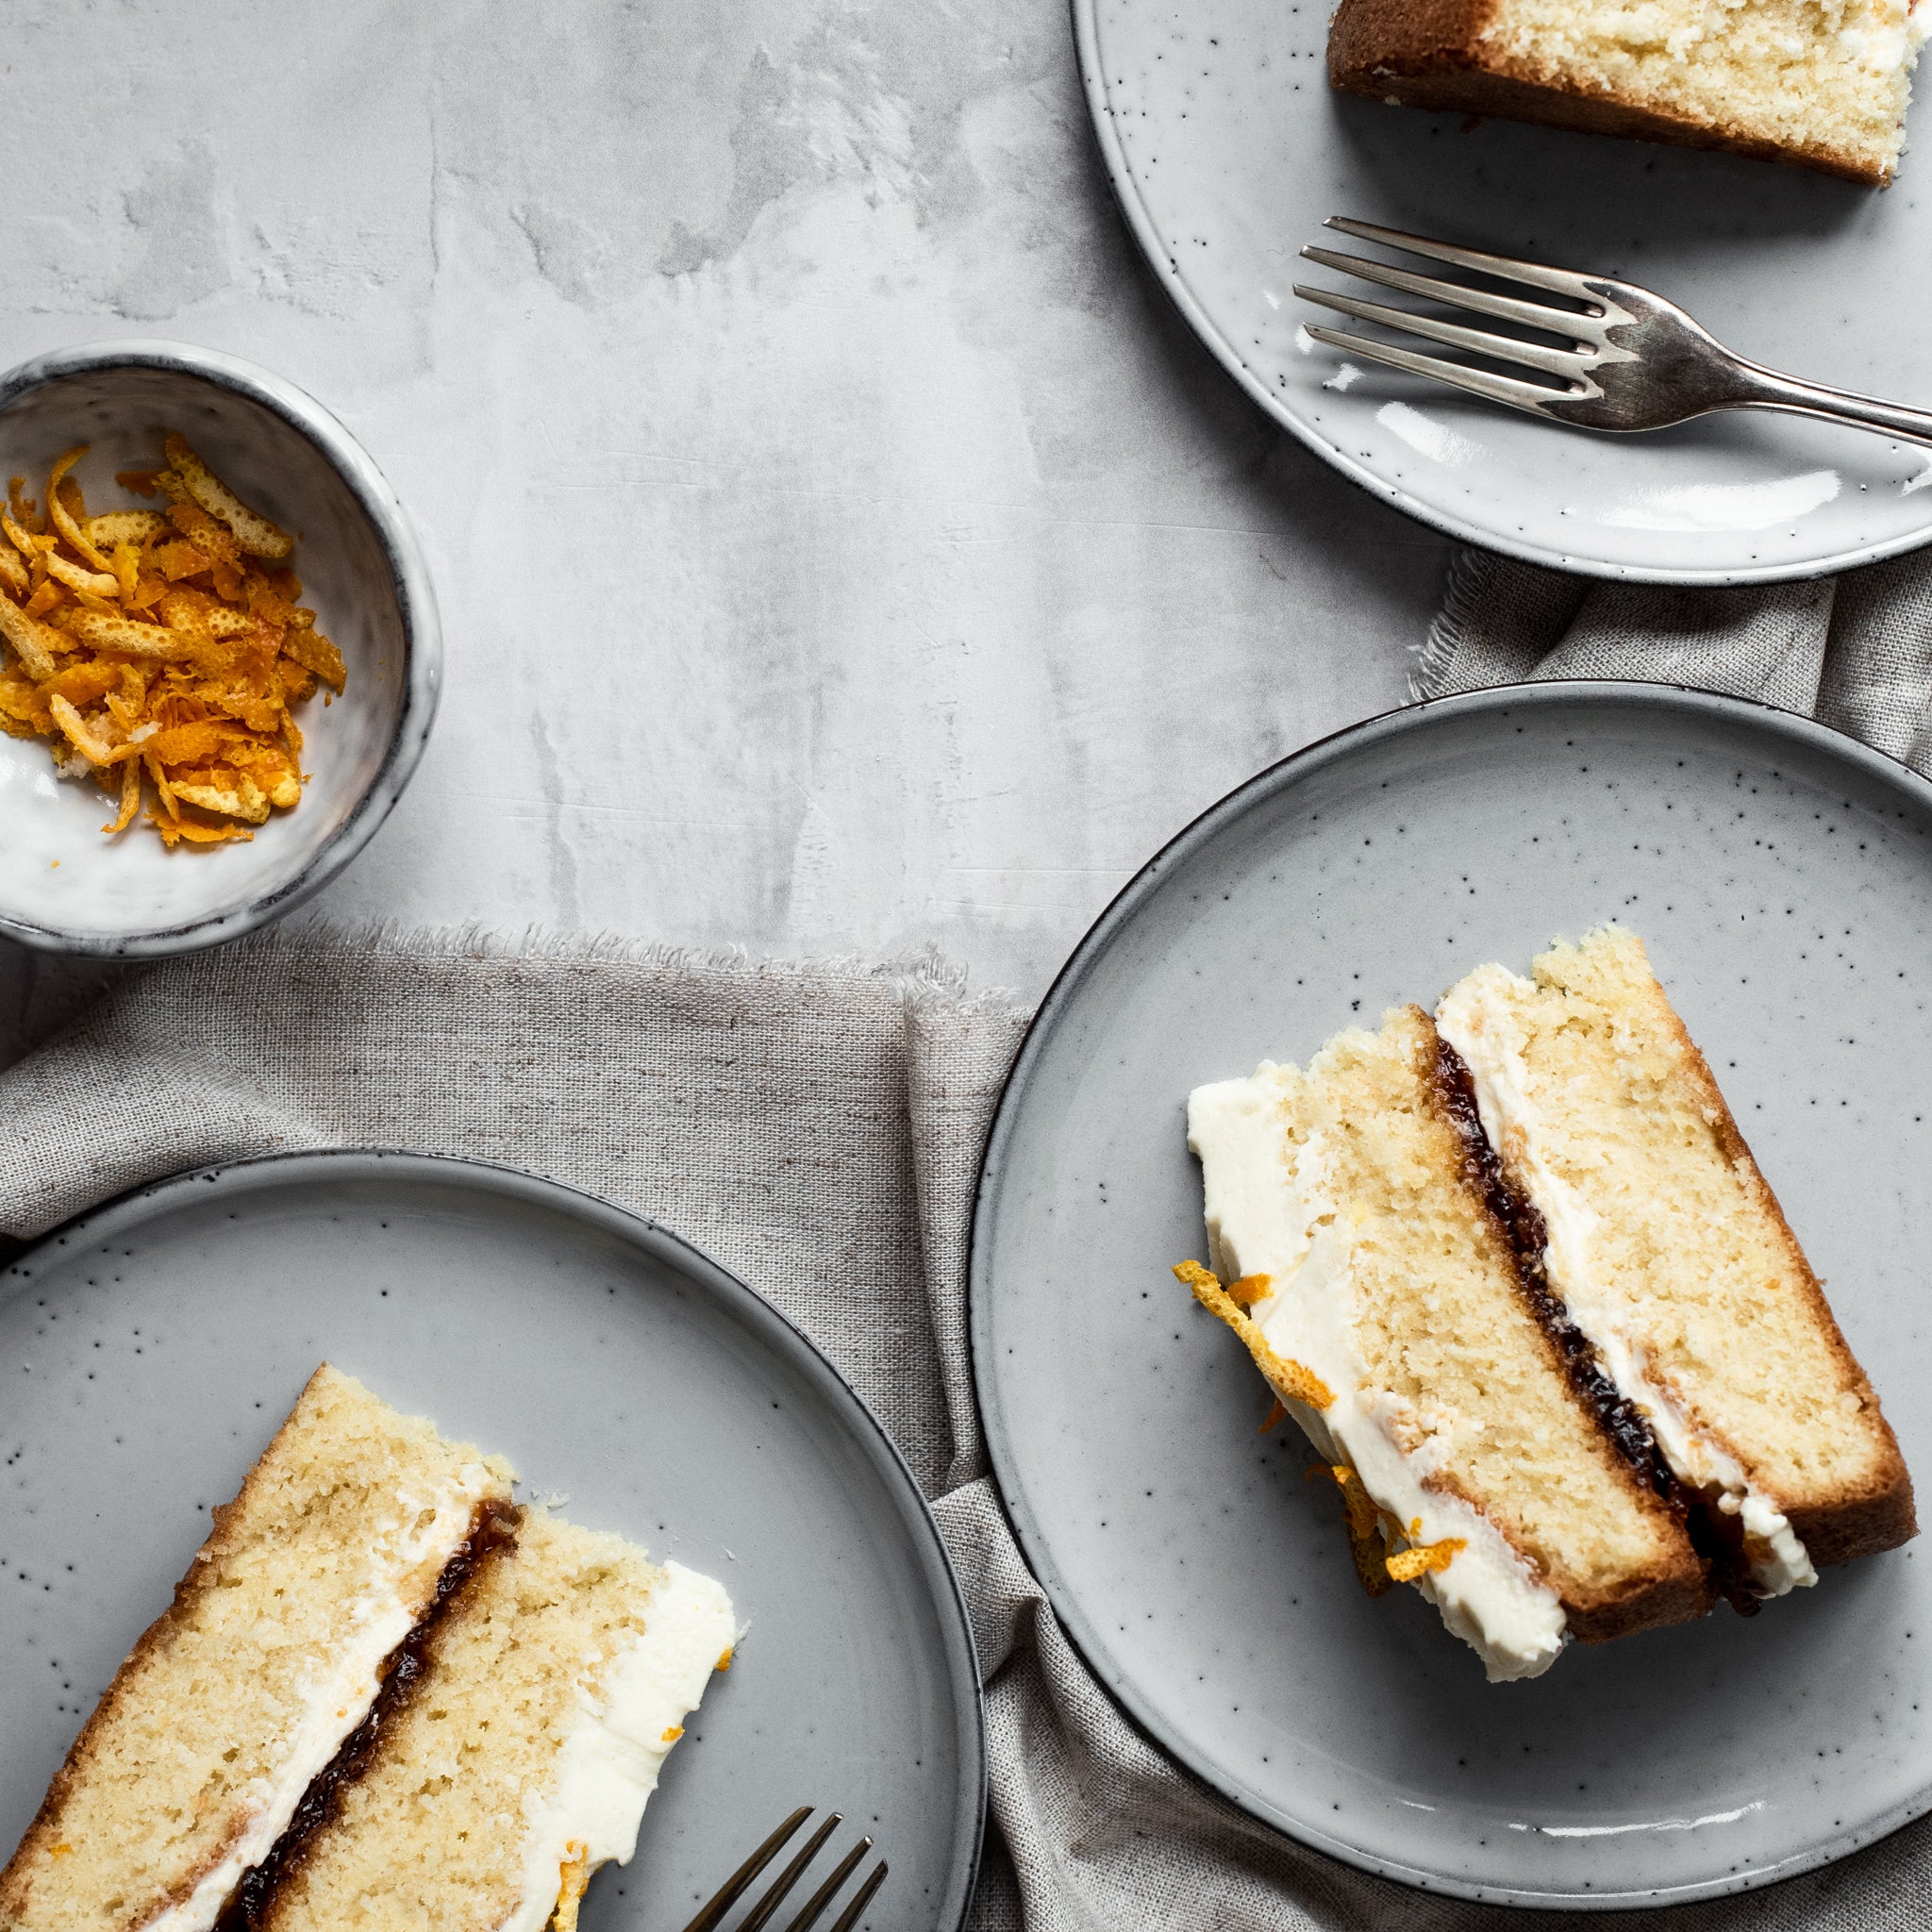 Orange Creamsicle Cake - The Baking ChocolaTess